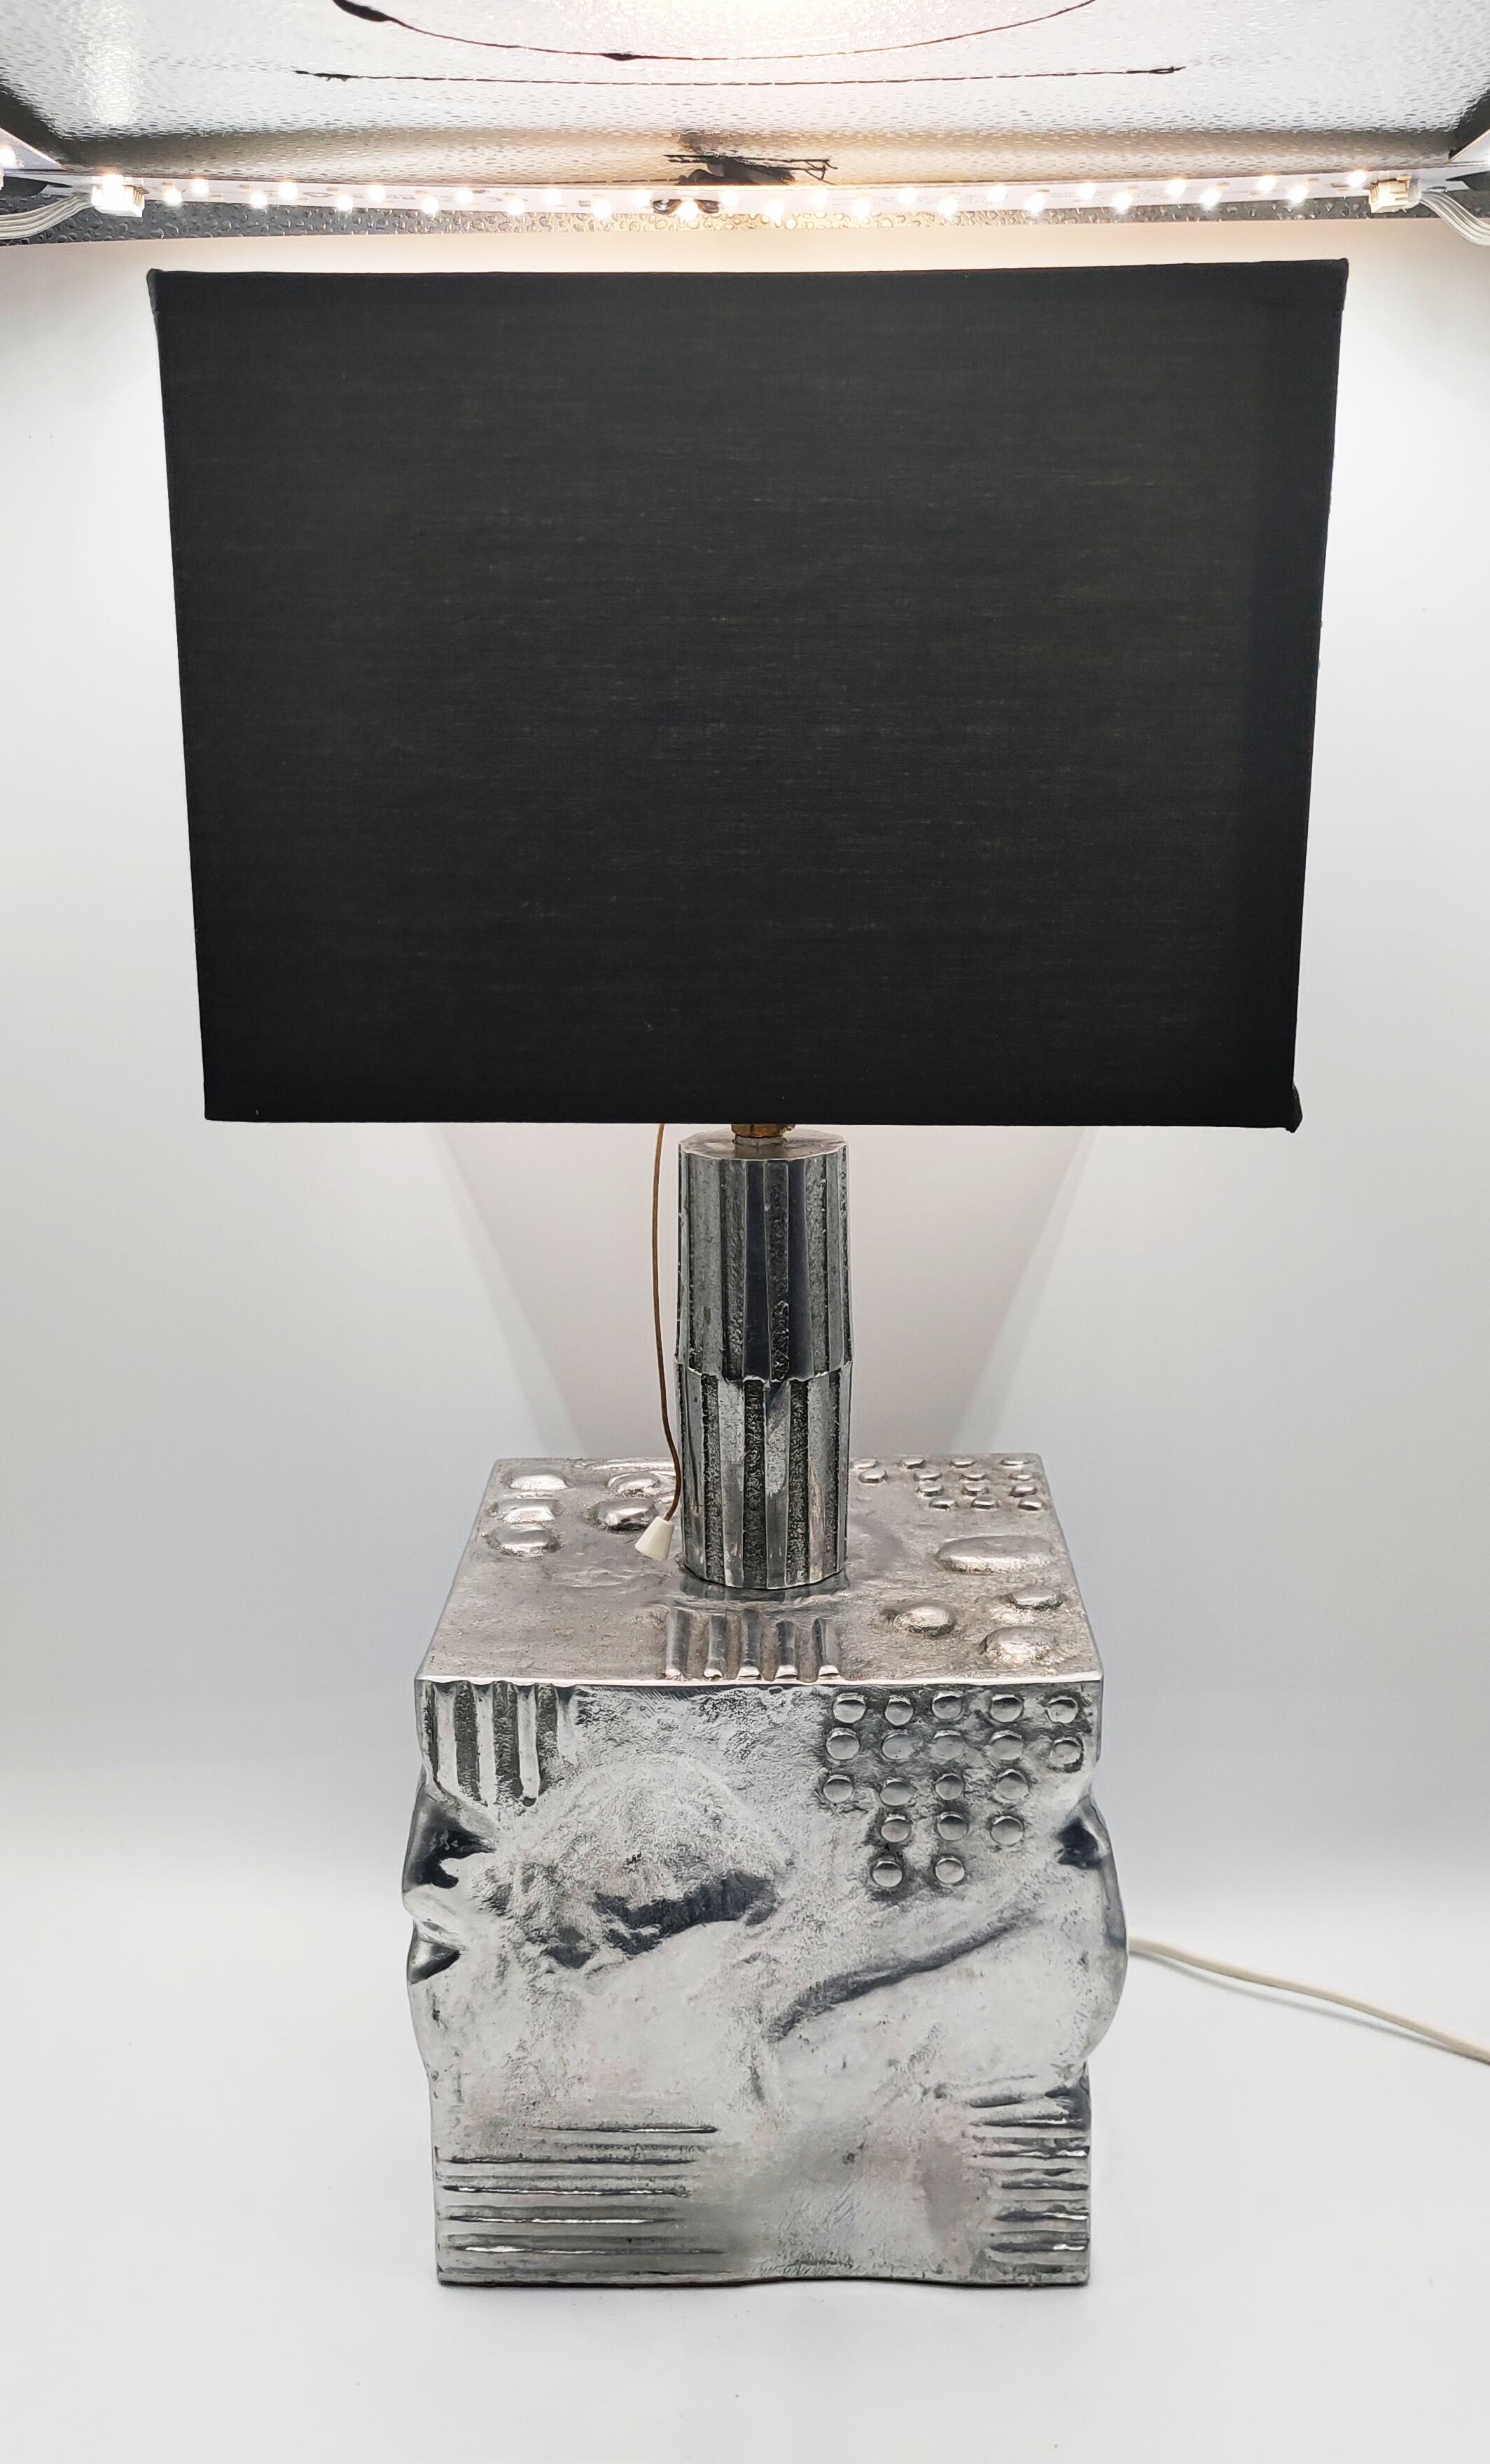 Seltene und schöne Schrift Aluminium skulpturale Tischlampe in Frankreich in den 1970er Jahren hergestellt. In perfektem Vintage-Zustand. Die Arbeit am Fuß ist sehr plastisch und schön. Eine sehr dekorative und brutalistische Lampe, wie eine